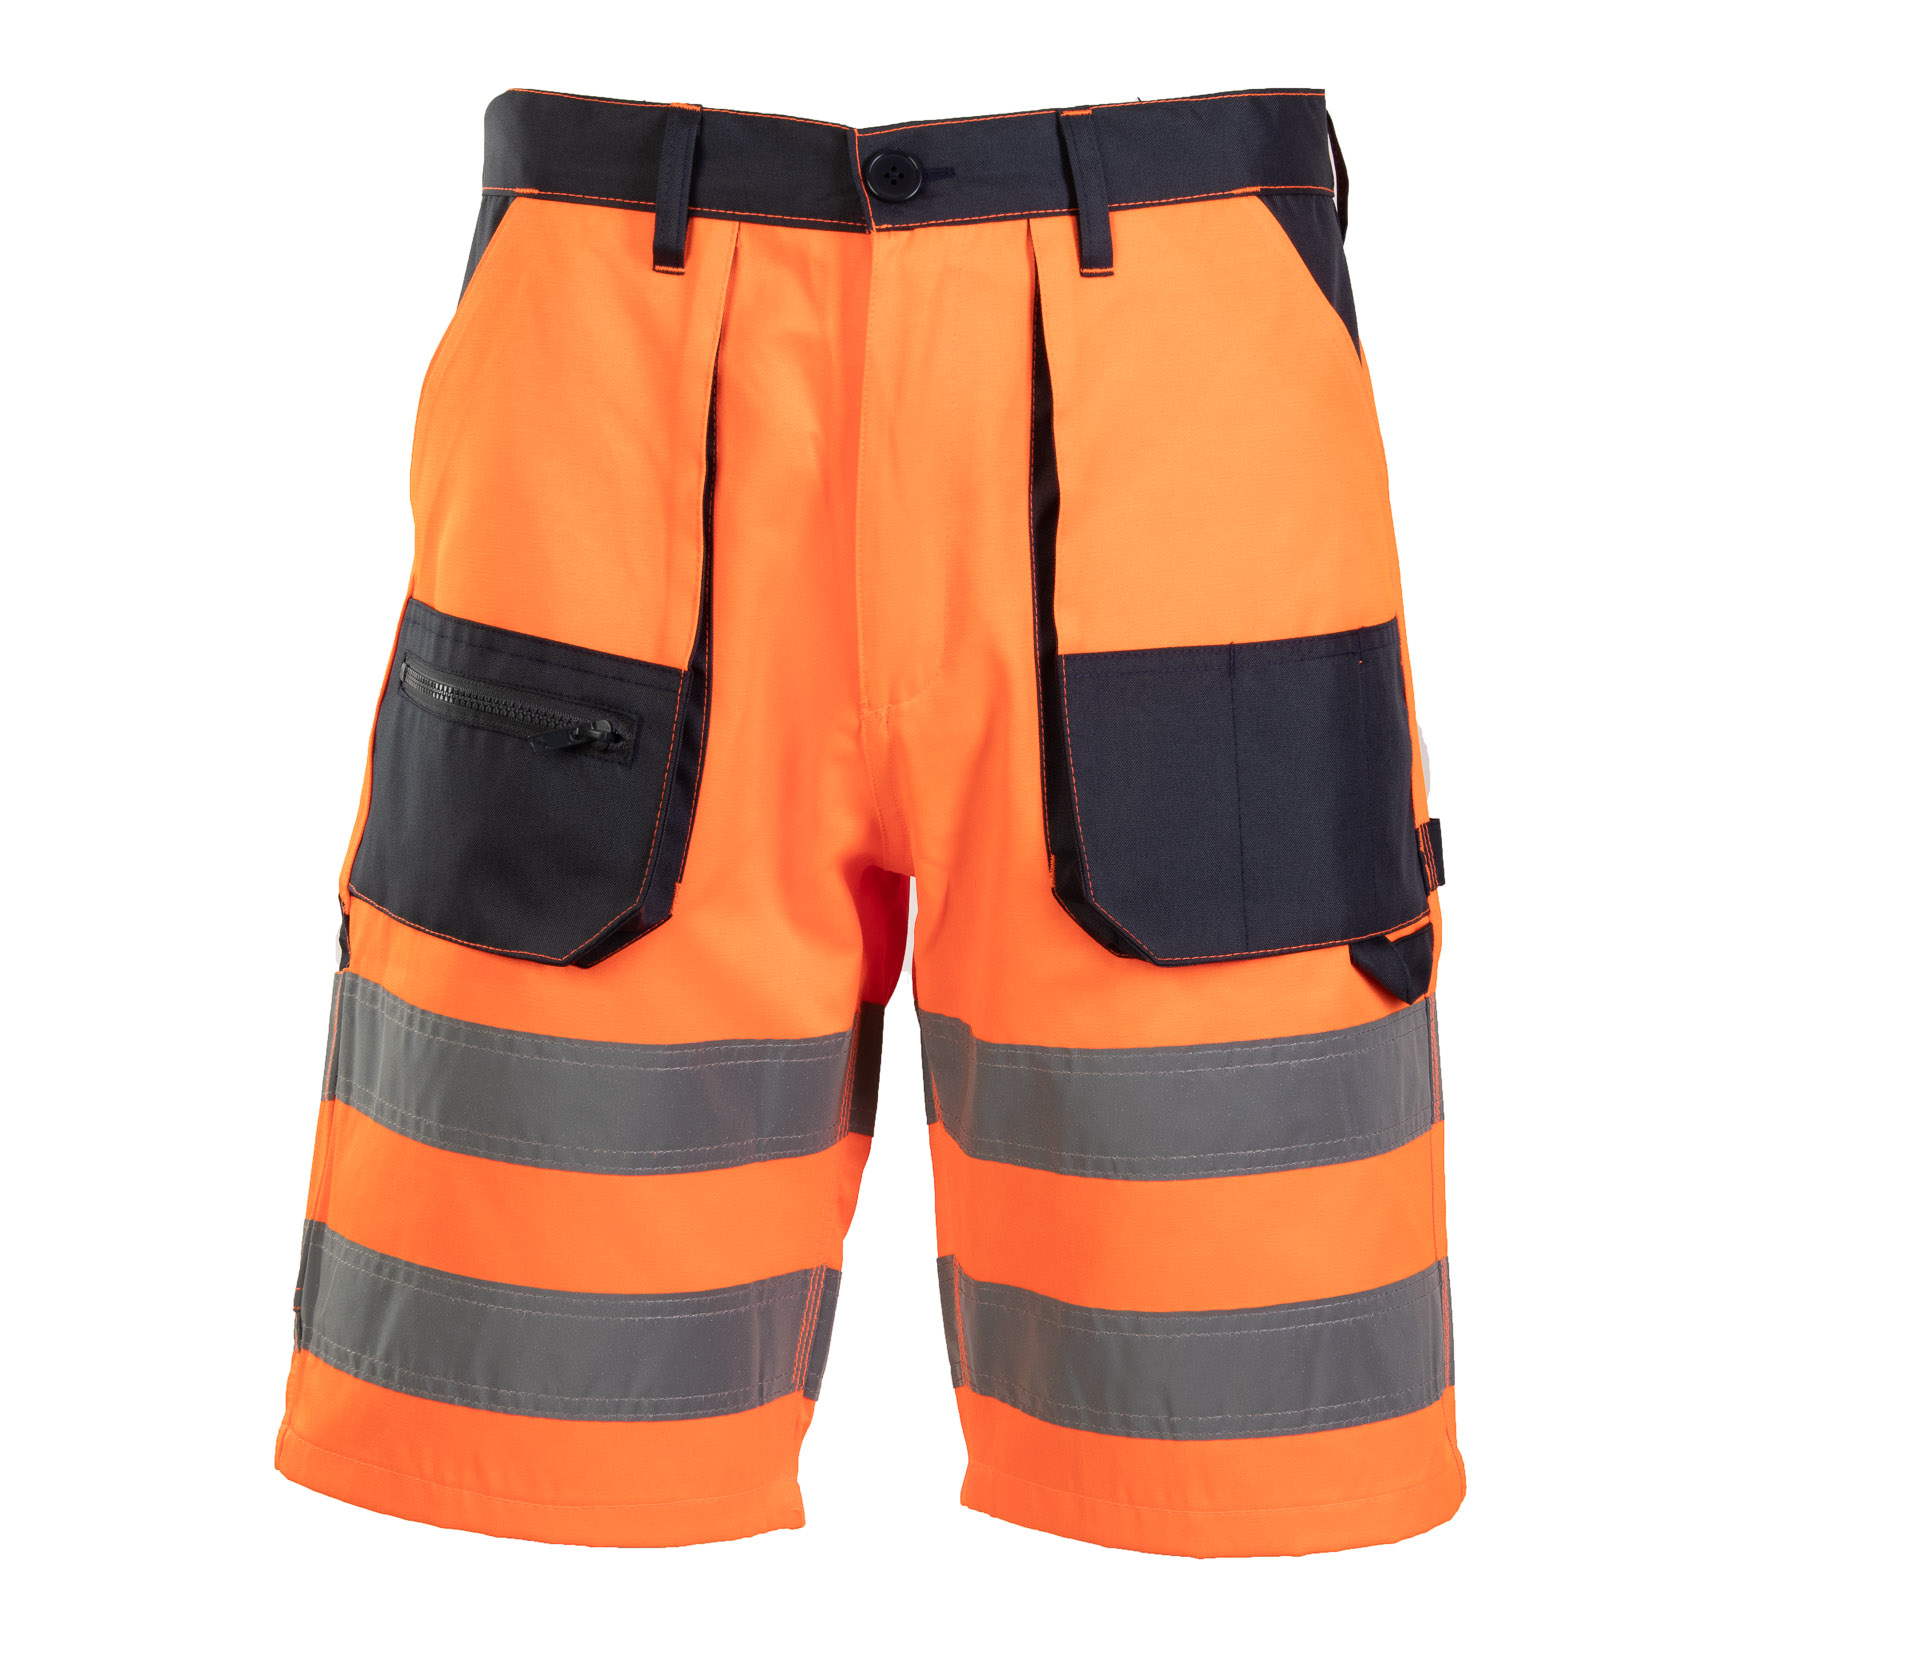 Светоотражающие шорты для мужчин рабочие. Рефлектив шорты. Sigma sub гидрокостюм короткий шорты. Shorts flashing